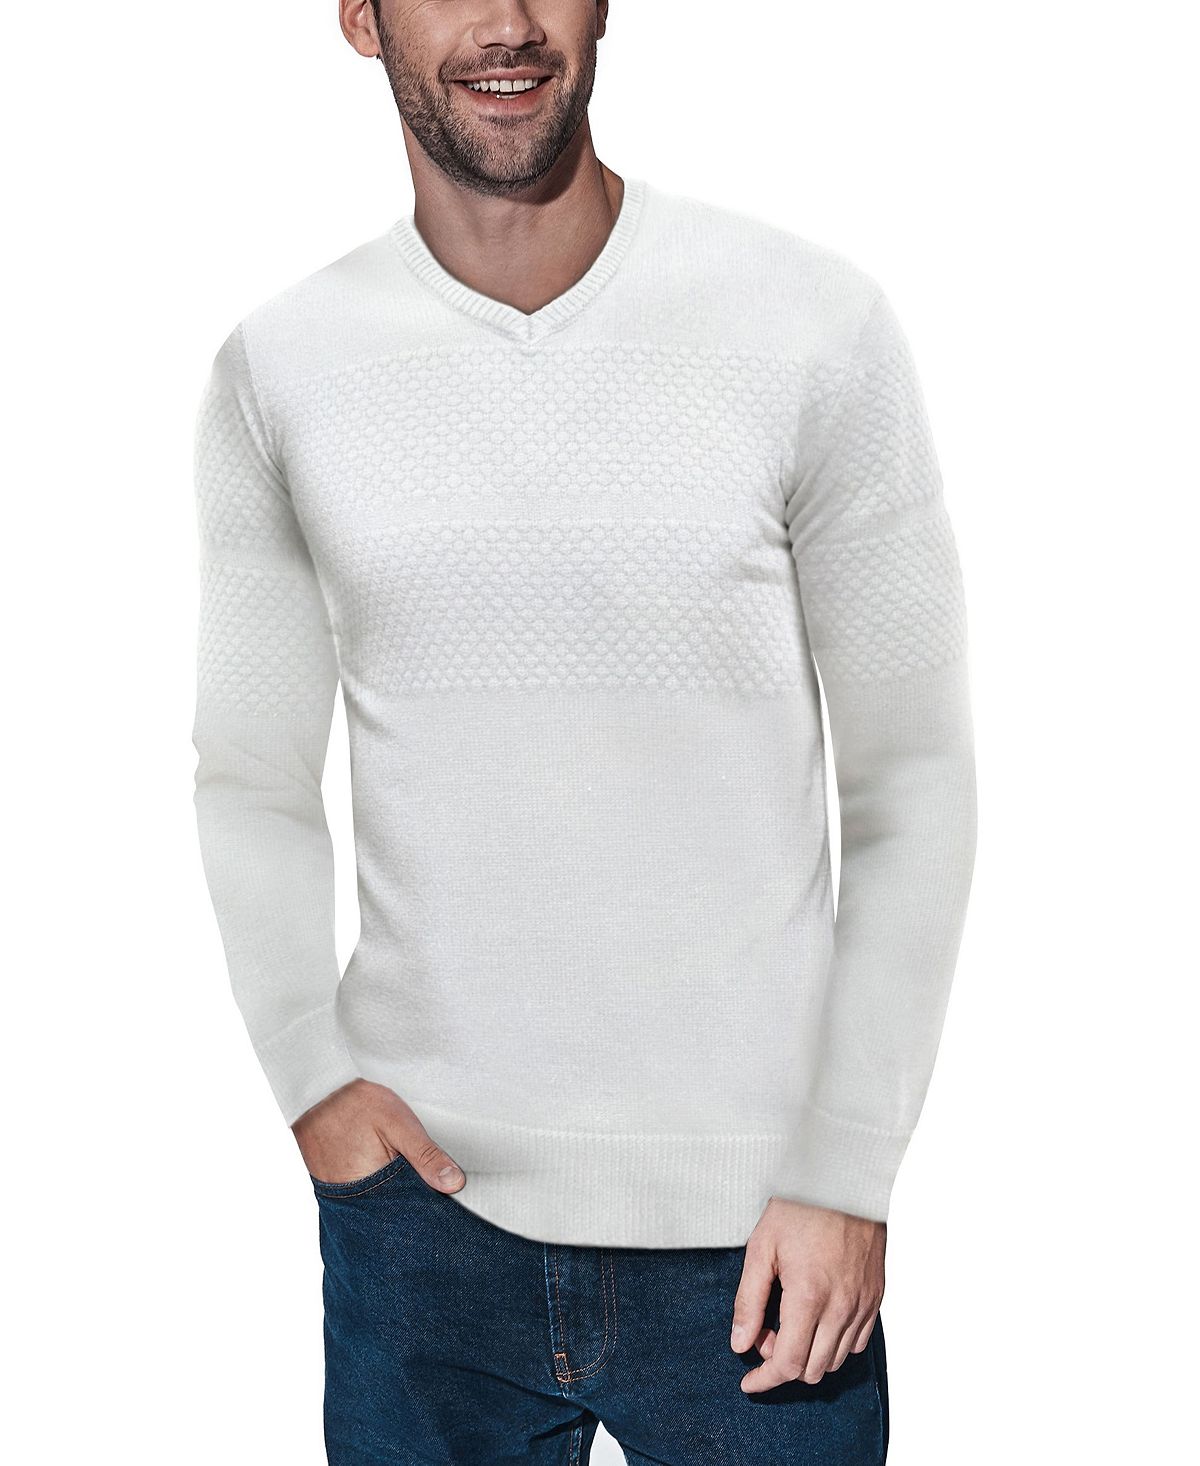 Мужской свитер сотовой вязки с v-образным вырезом X-Ray, мульти пуловер с v образным вырезом xs бежевый